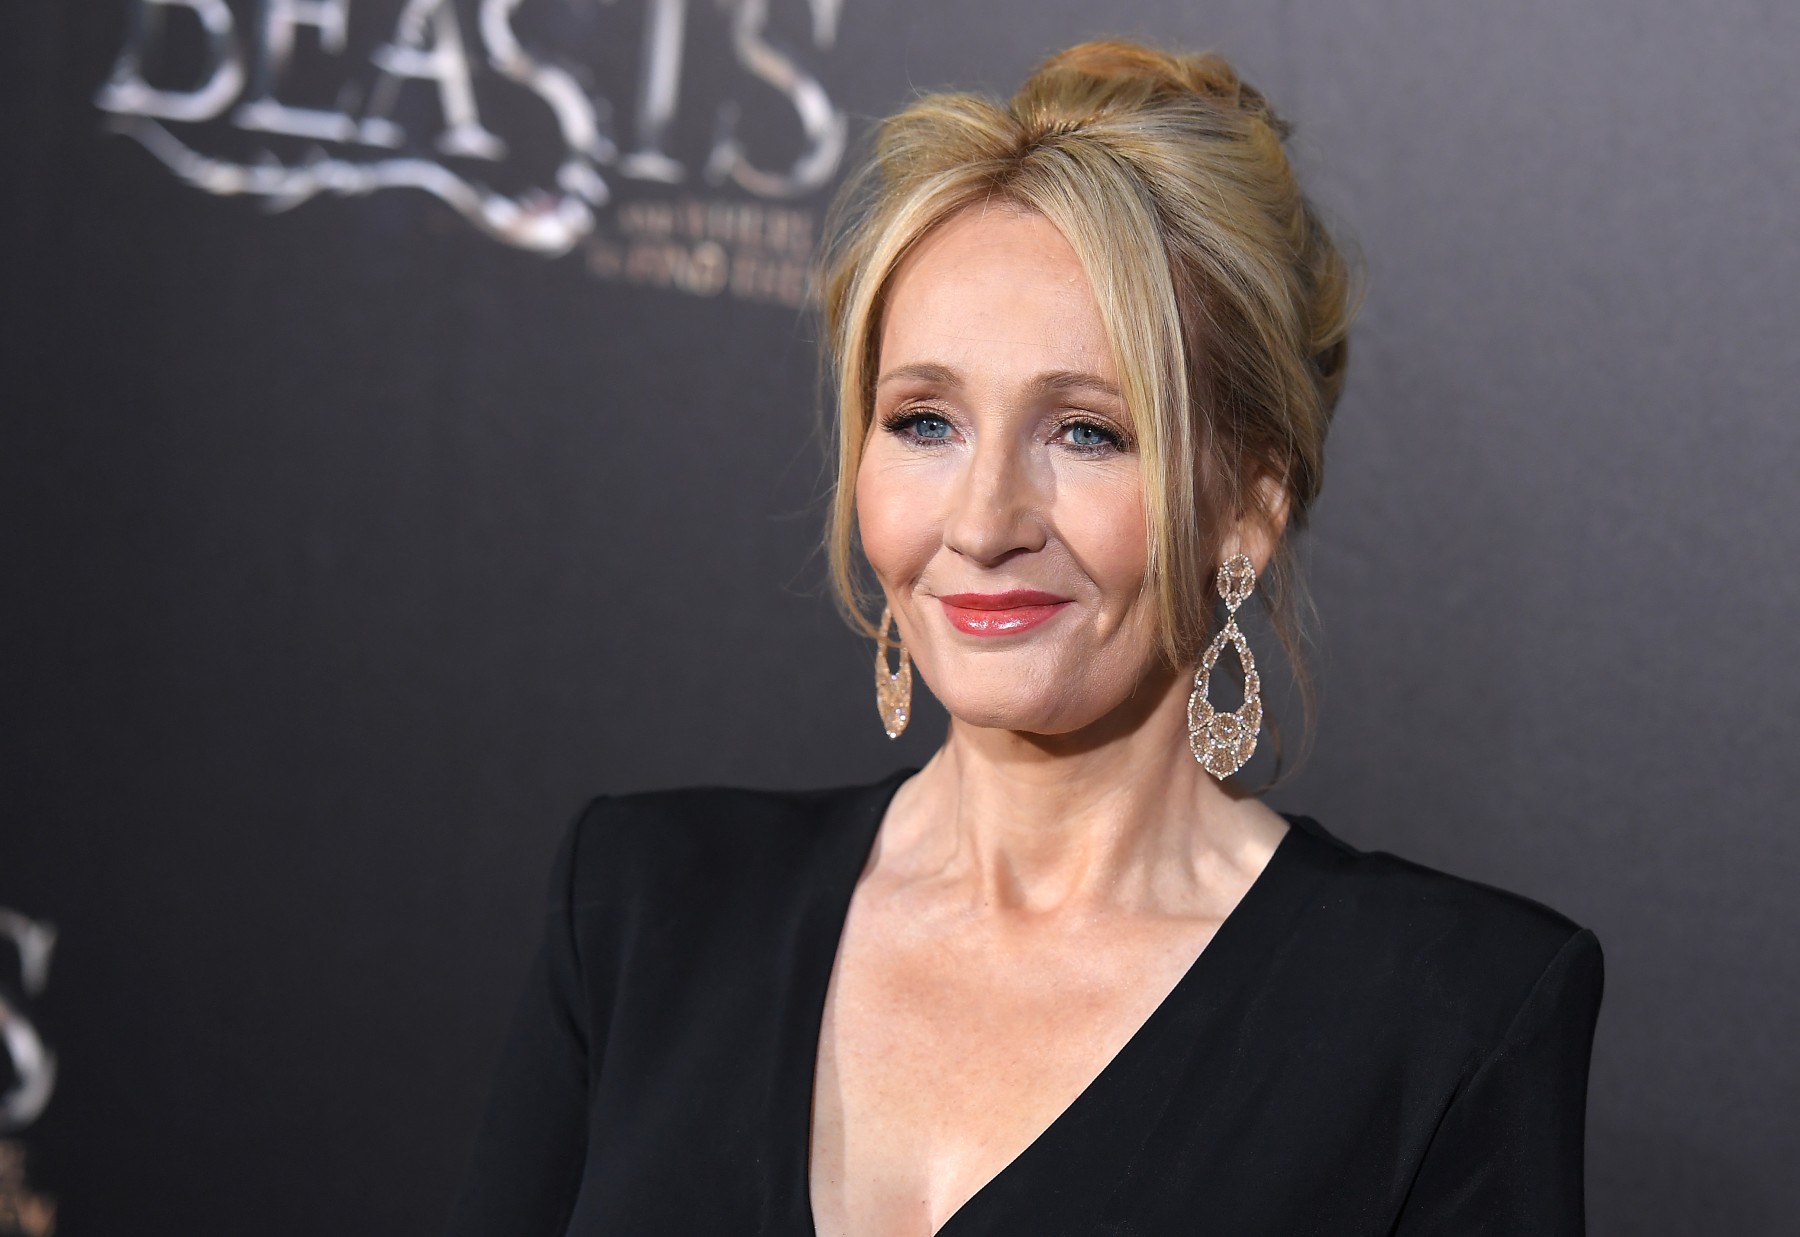 Señalan a J. K. Rowling de transfóbica por su nuevo libro